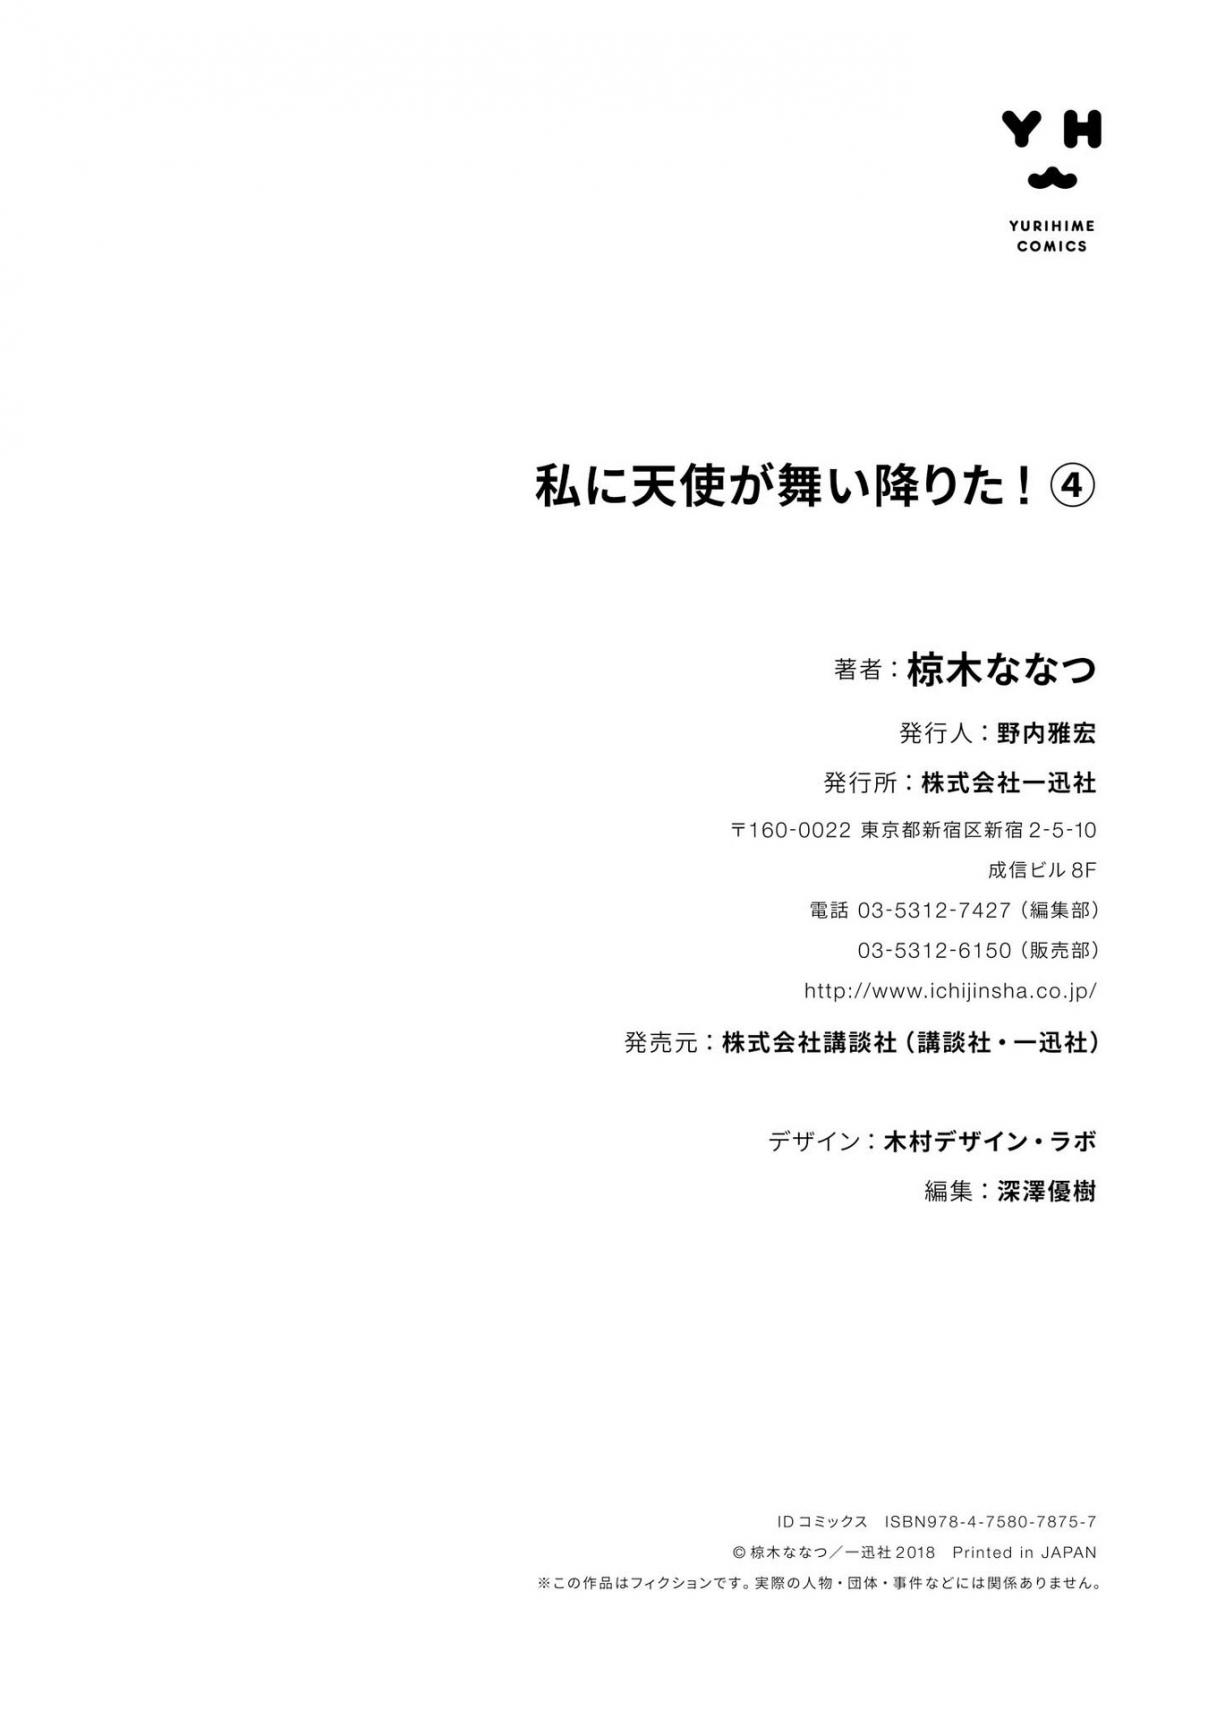 Watashi ni Tenshi ga Maiorita! Vol. 4 Ch. 36.5